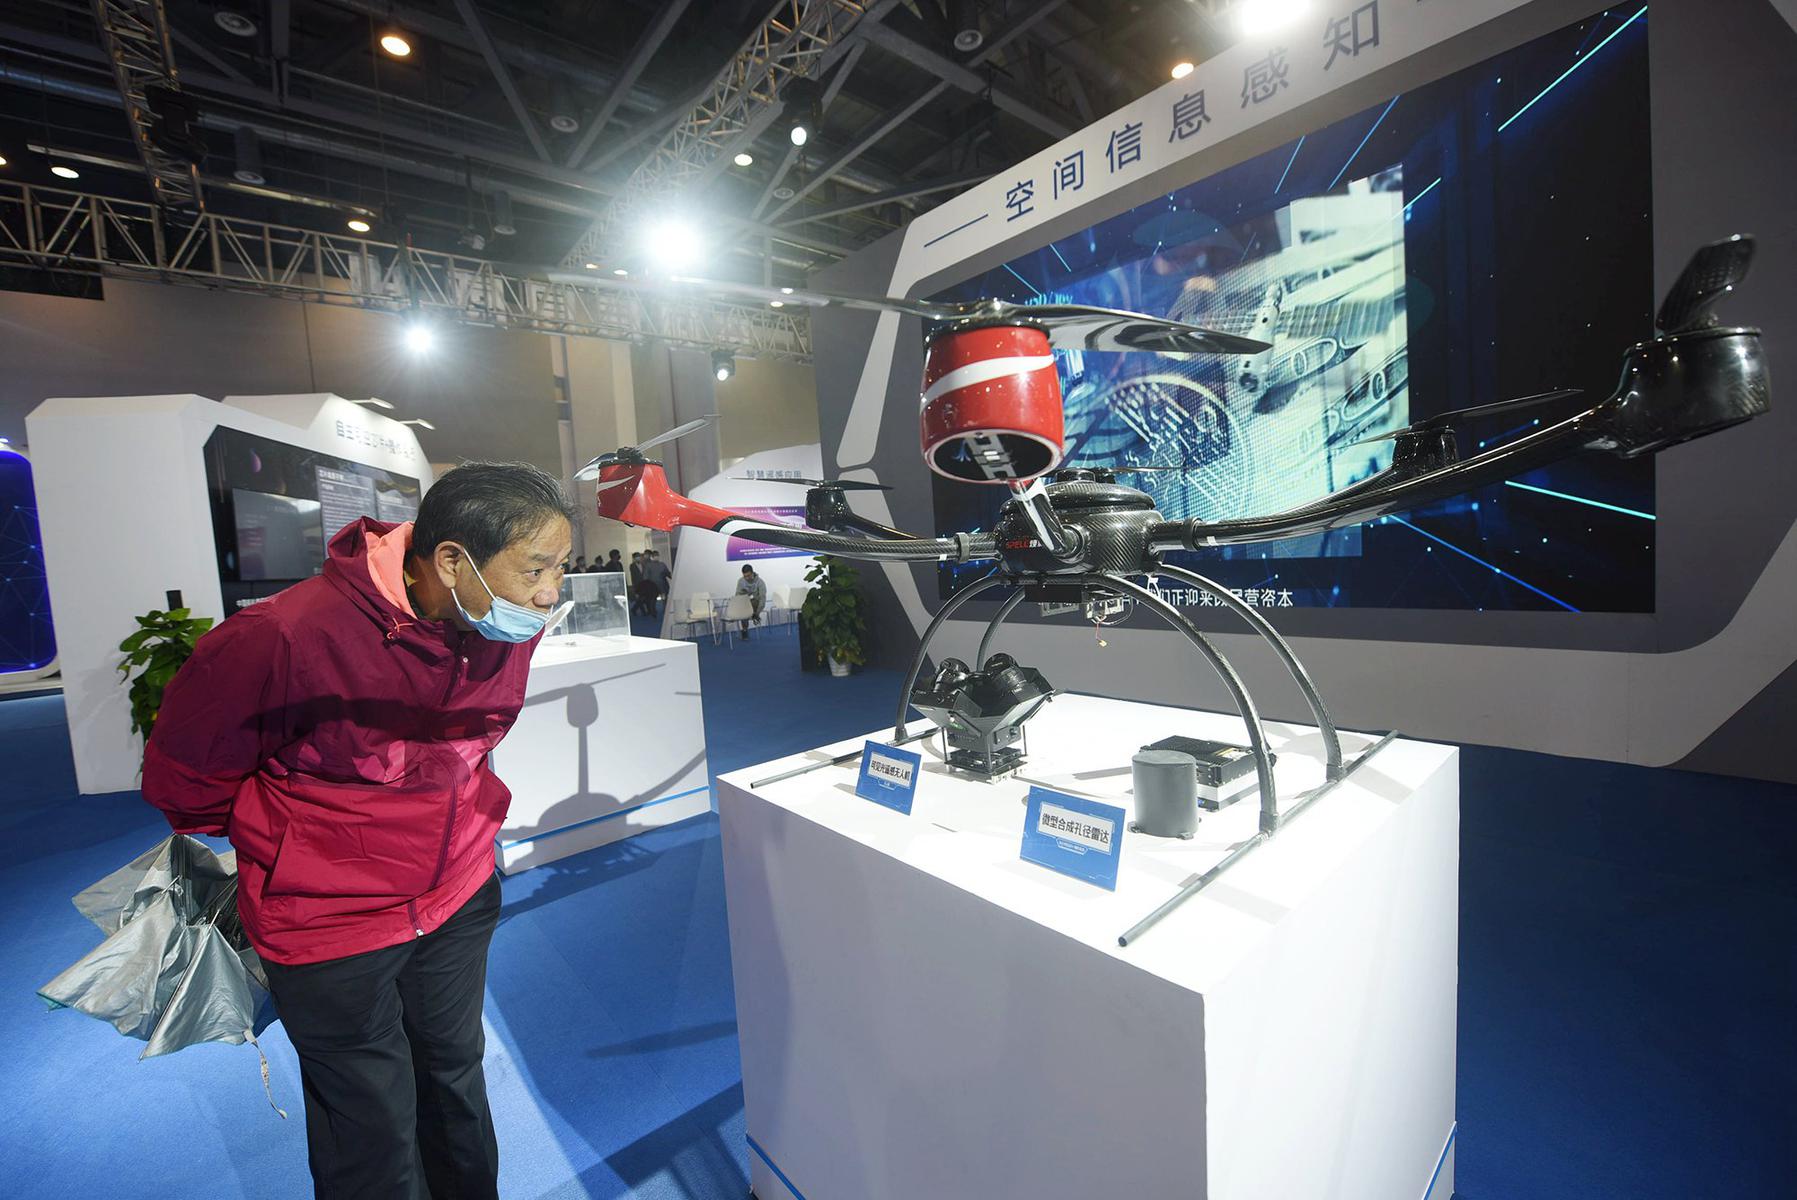 Посетитель рассматривает беспиолотный летательный аппарат на технологической выставке в Гуанчжоу (Китай). Фото: Getty Images